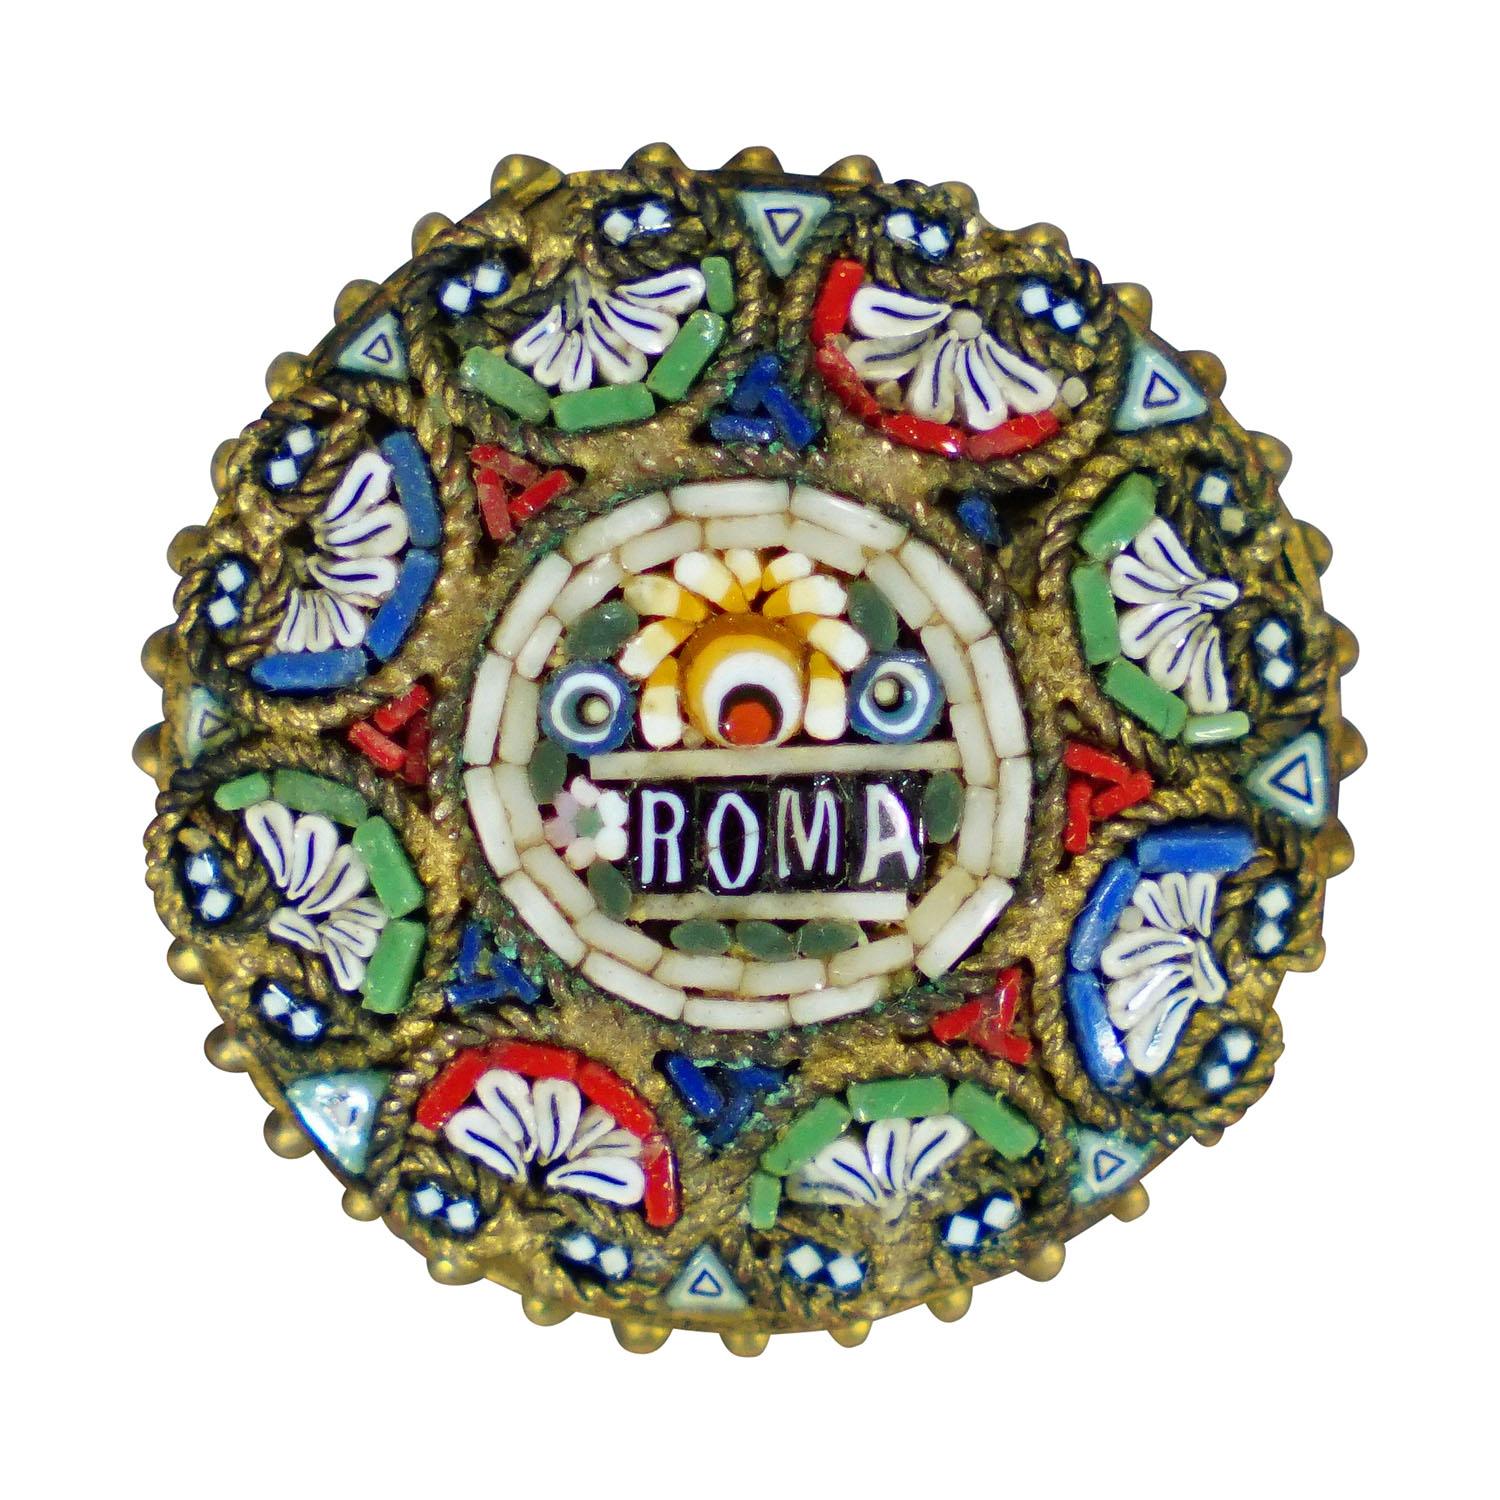 Antike viktorianische Mikromosaik-Brosche mit vergoldeter Umrahmung, Italien Anfang 20.

Eine viktorianische Mikromosaik-Brosche mit einem zentralen Blumenstrauß-Motiv und der Aufschrift 